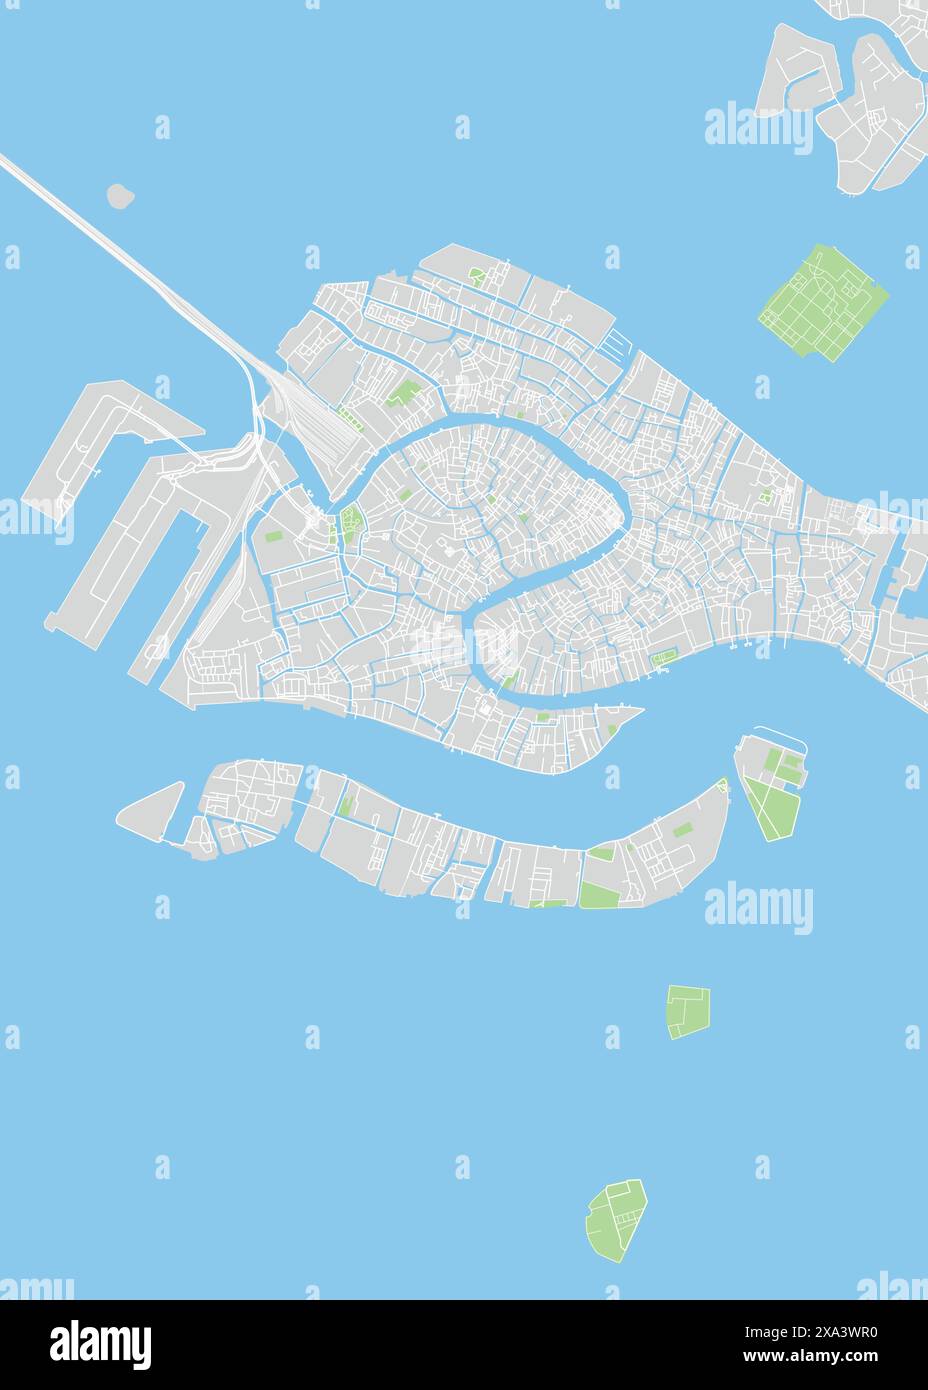 Stadtplan Venedig, Farbe detaillierter Plan, Vektor-Illustration Stock Vektor